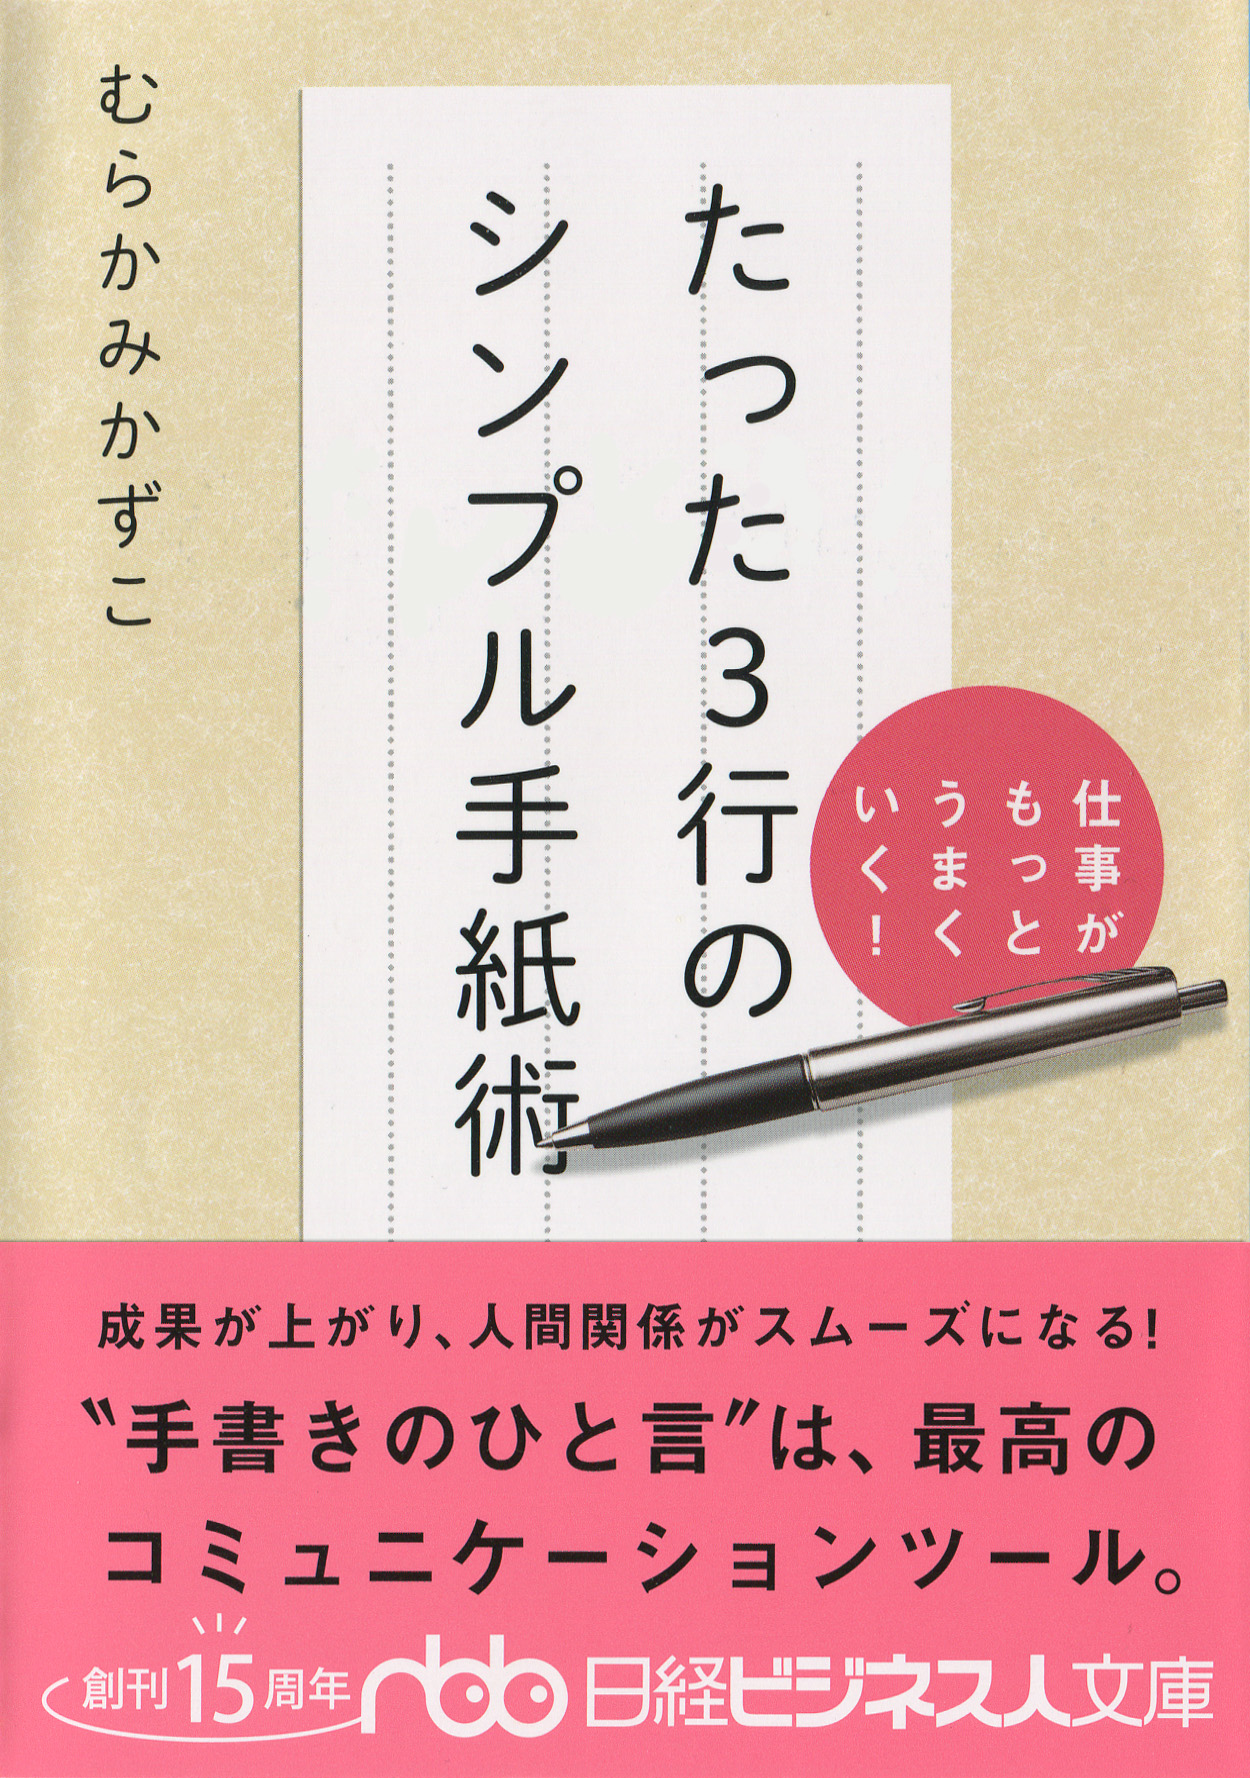 印象的な切手 手書きのラブレター文例 京都で買ったがま口タイプのペンケース むらかみかずこのほんのり楽しむ手紙時間